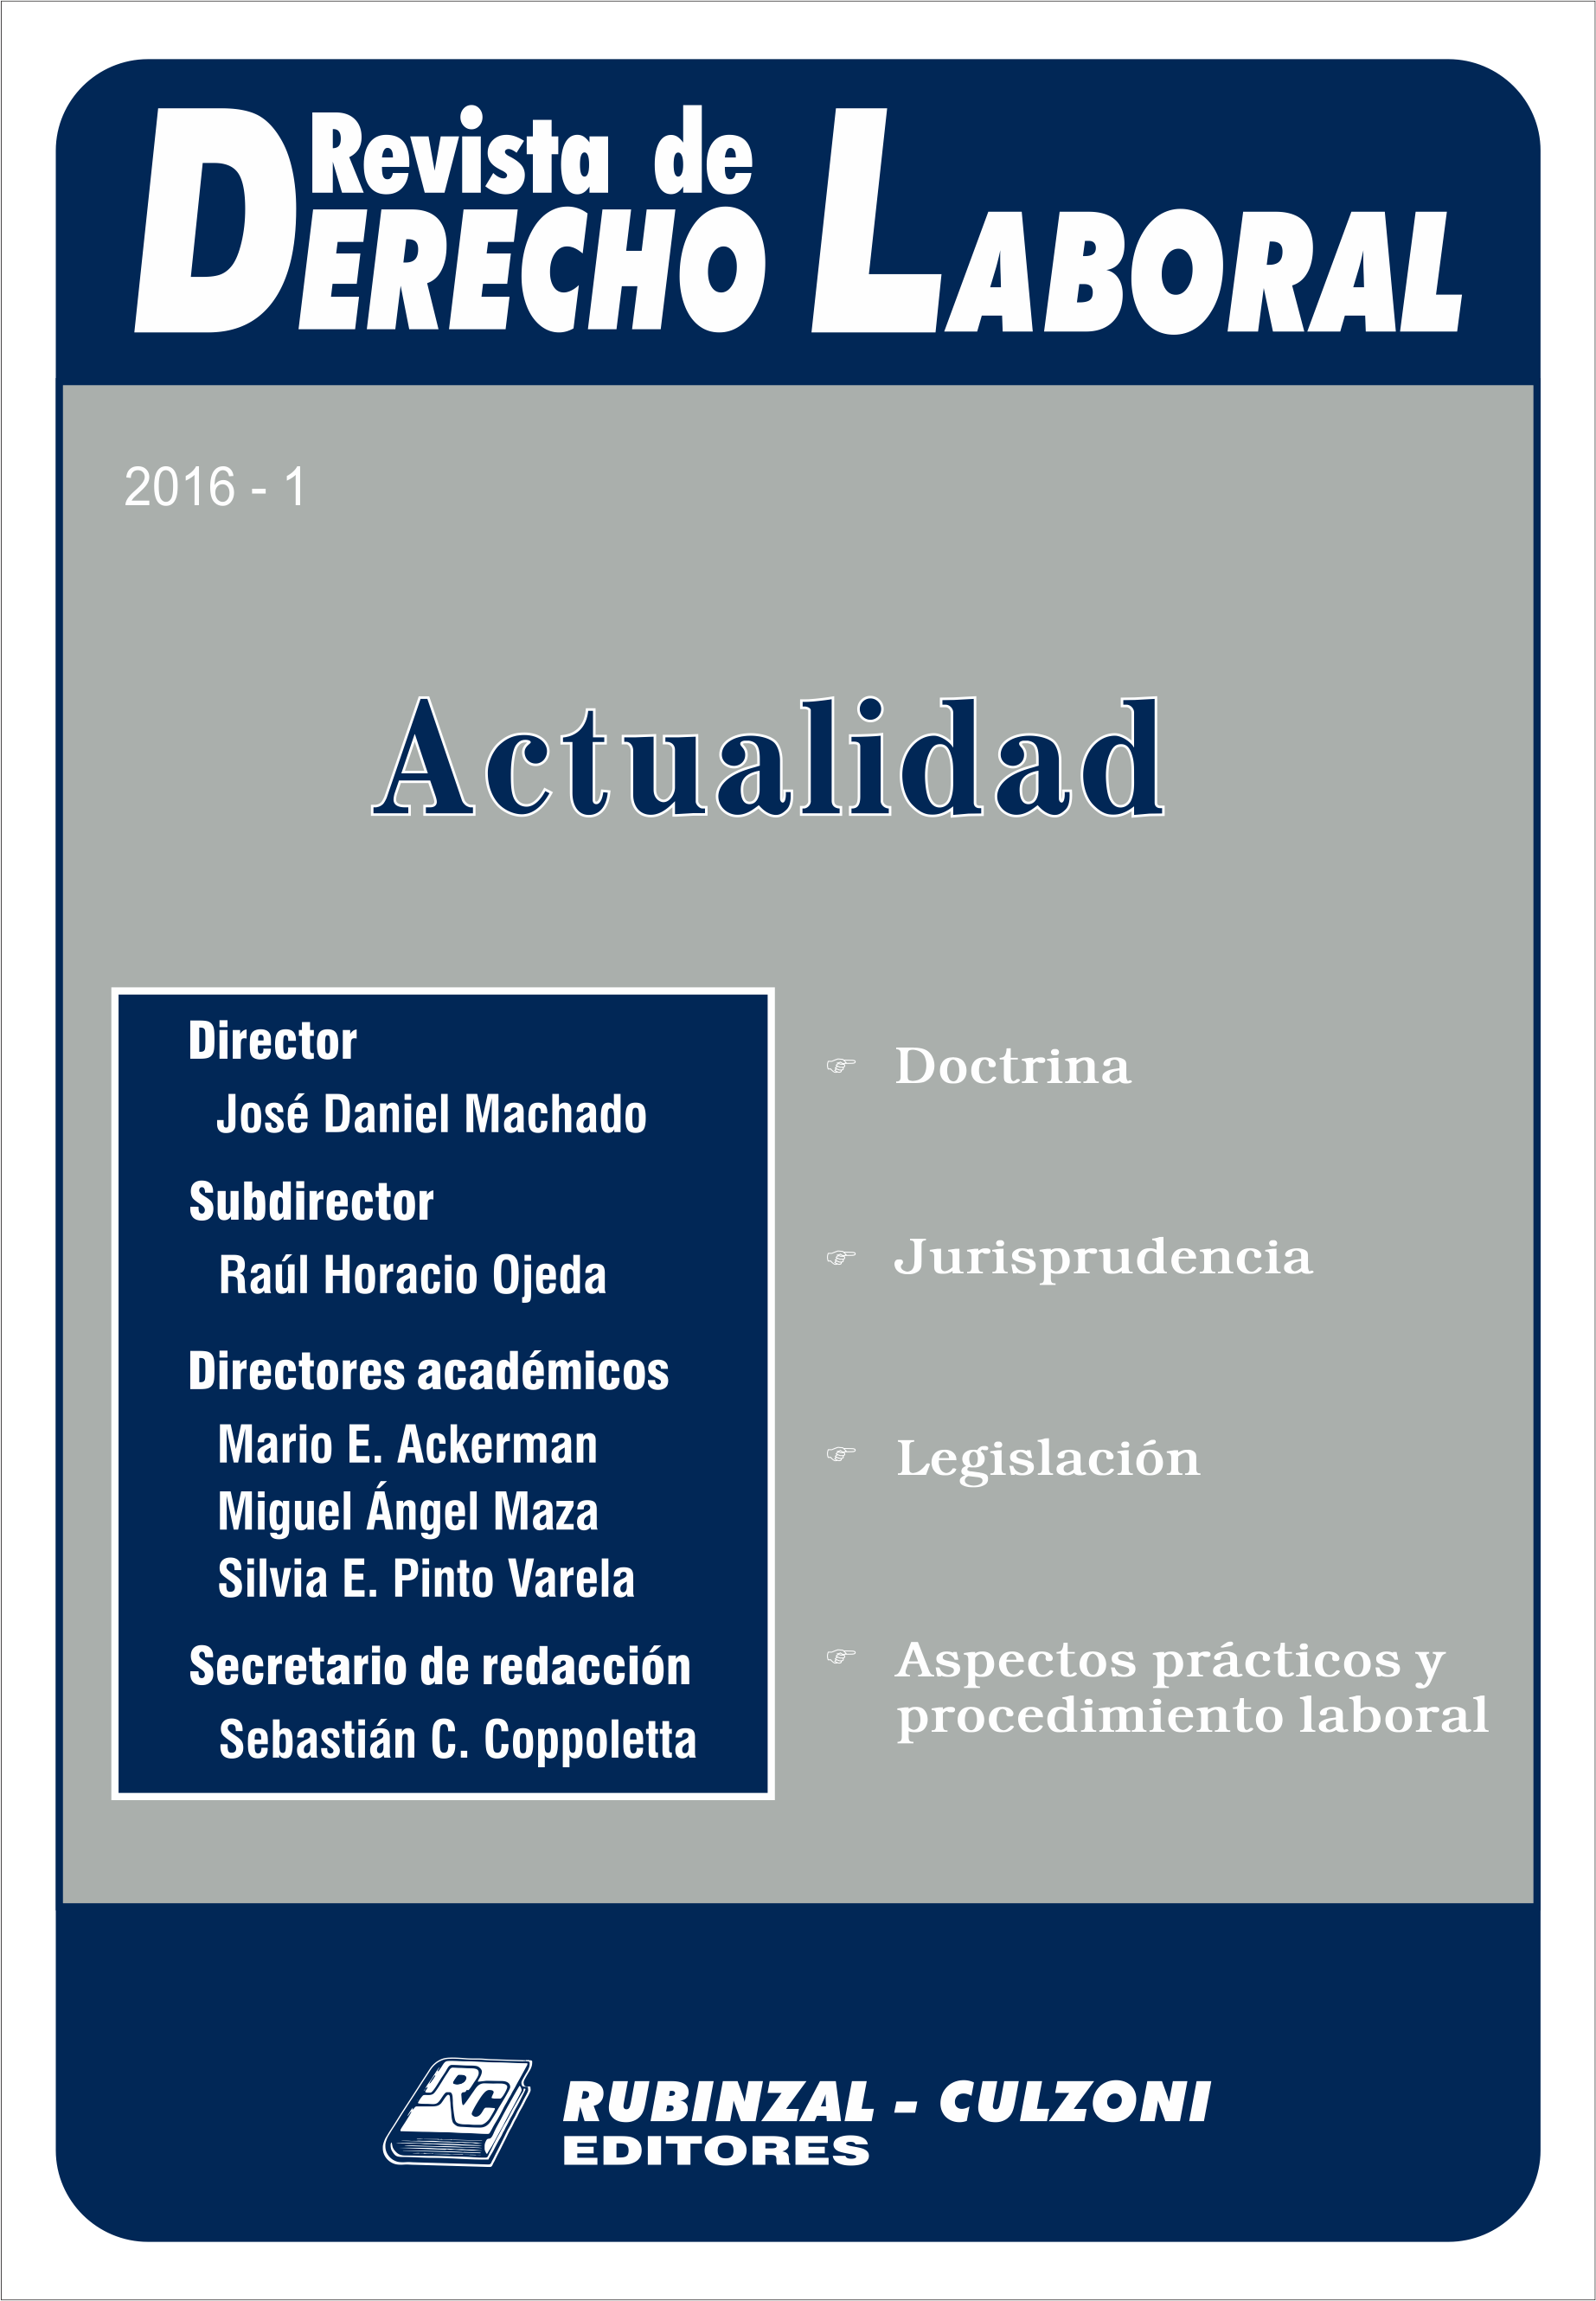 Revista de Derecho Laboral Actualidad - Año 2016 - 1